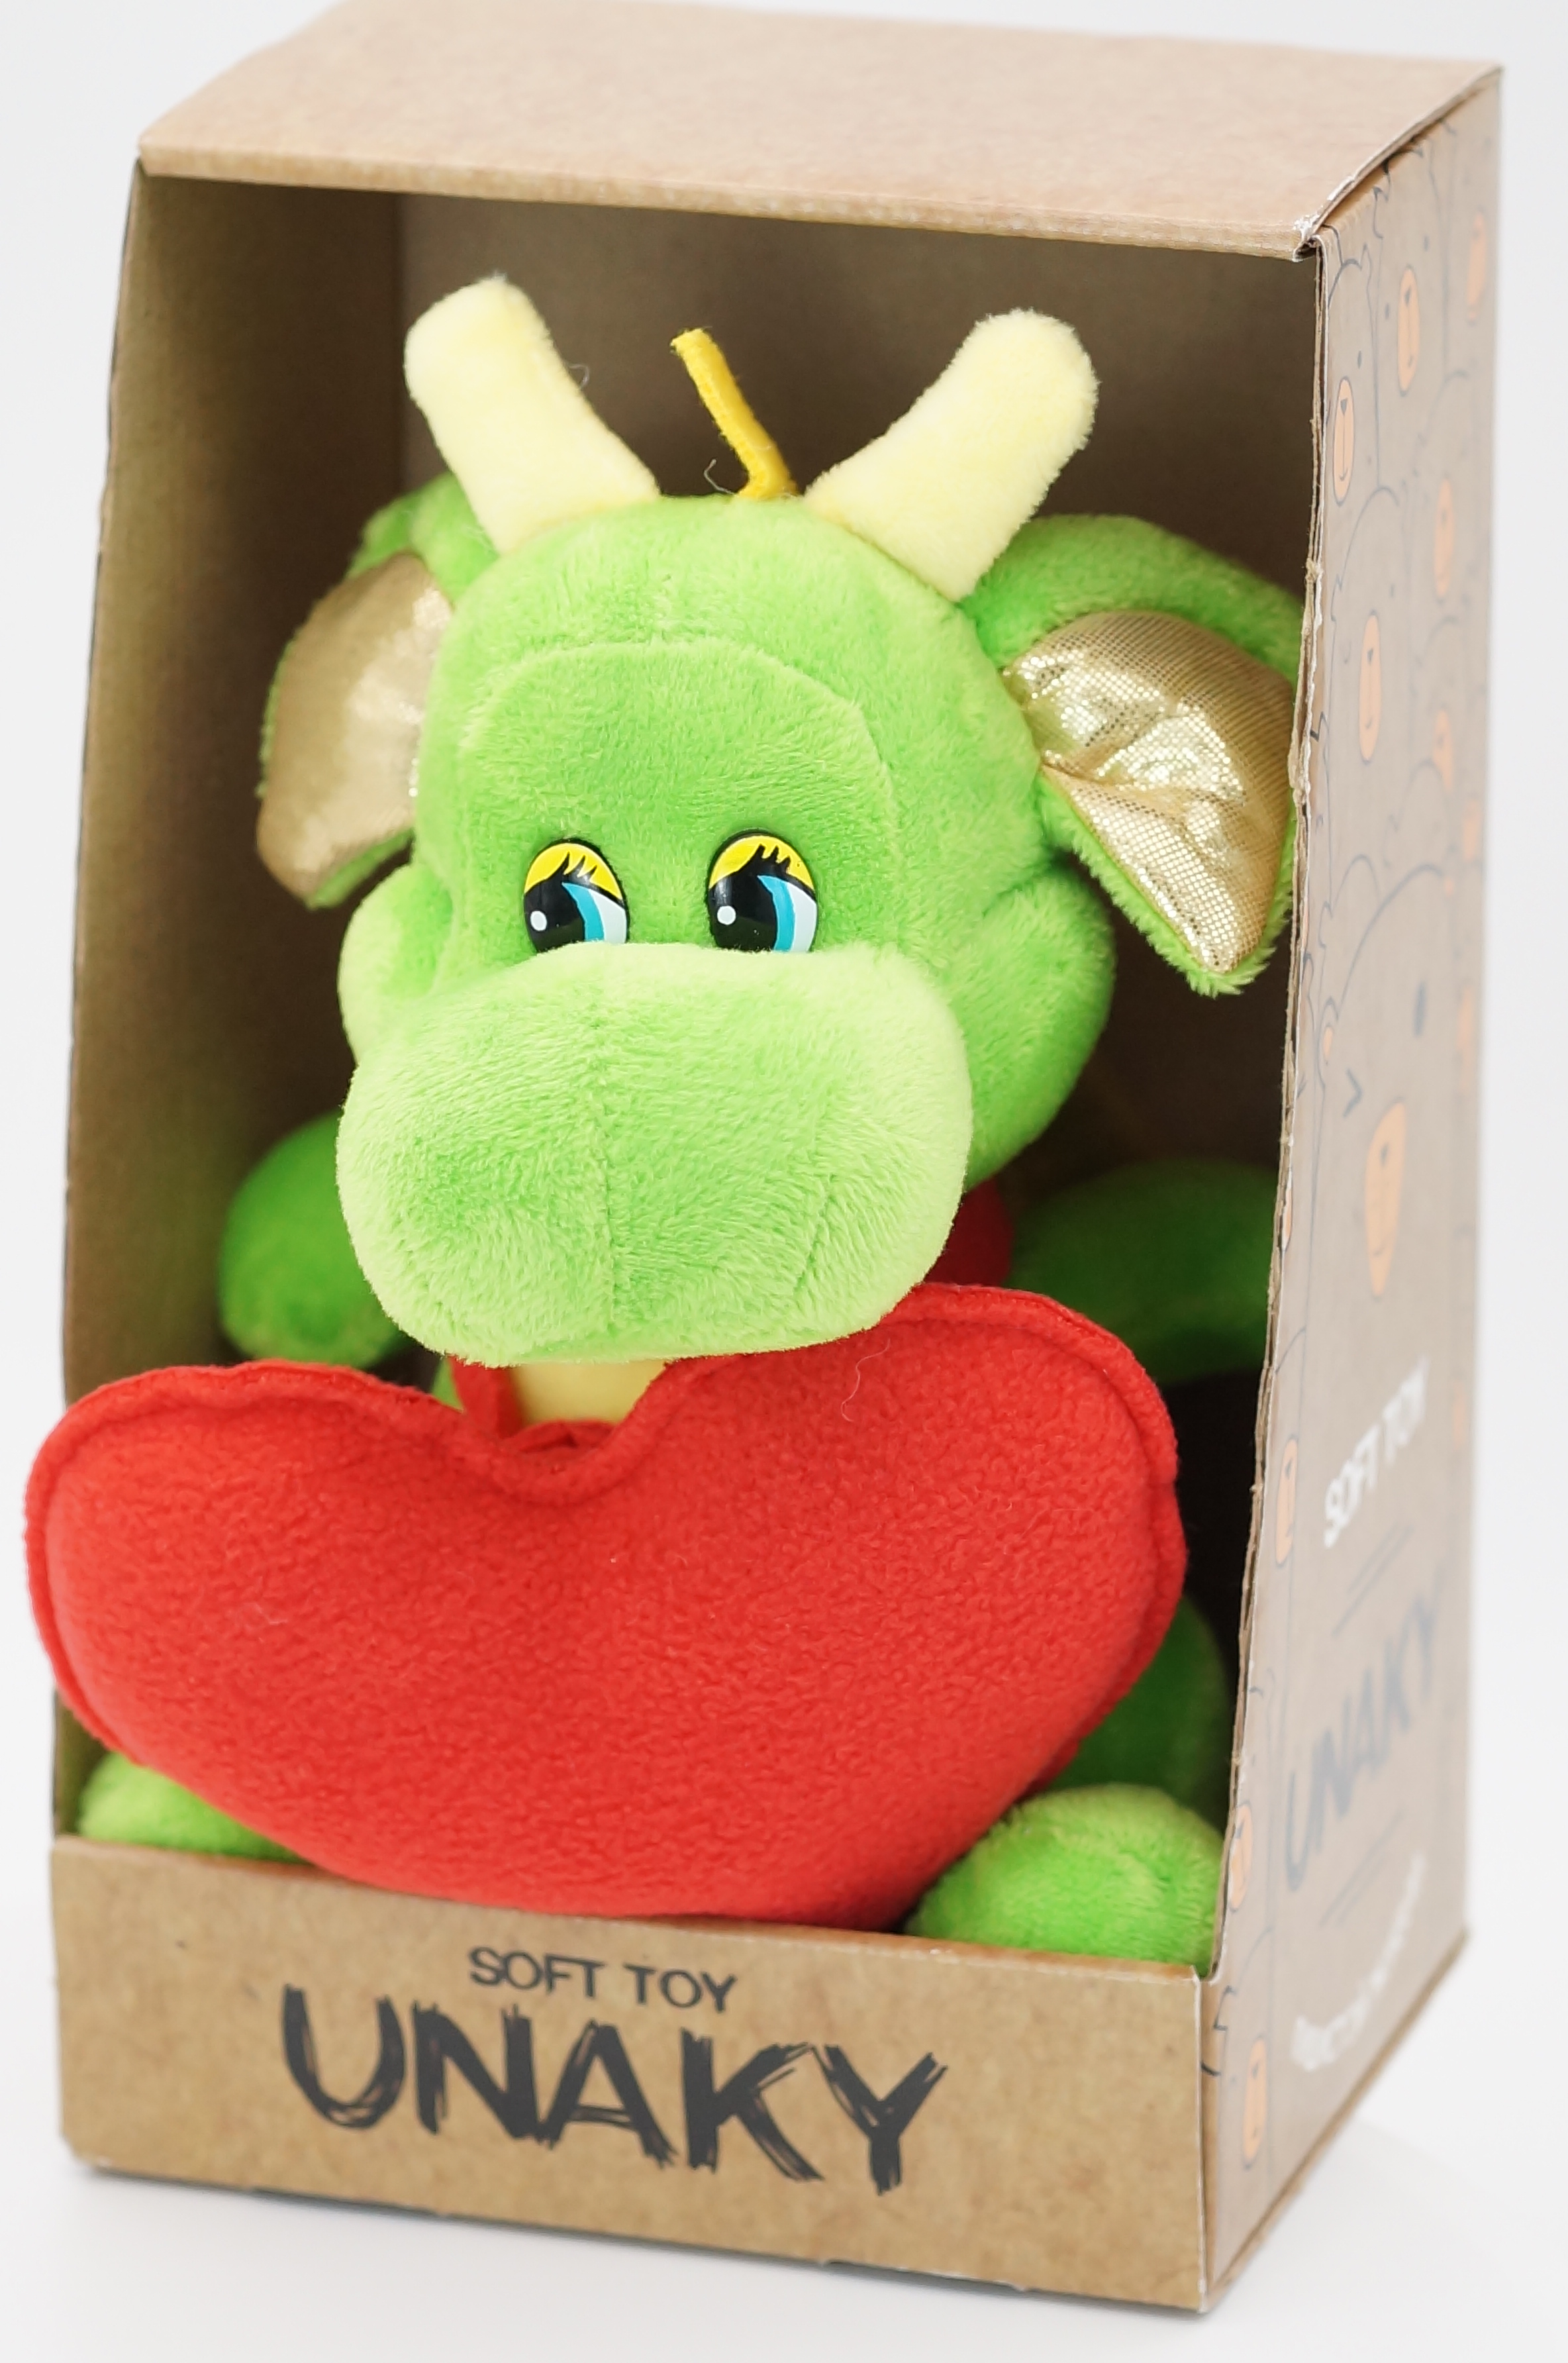 Мягкая игрушка Unaky Soft Toy дракон Горыныч 20-23 см 0965417-44K зеленый мягкая игрушка unaky soft toy крокодил роб 0888320m зеленый белый красный